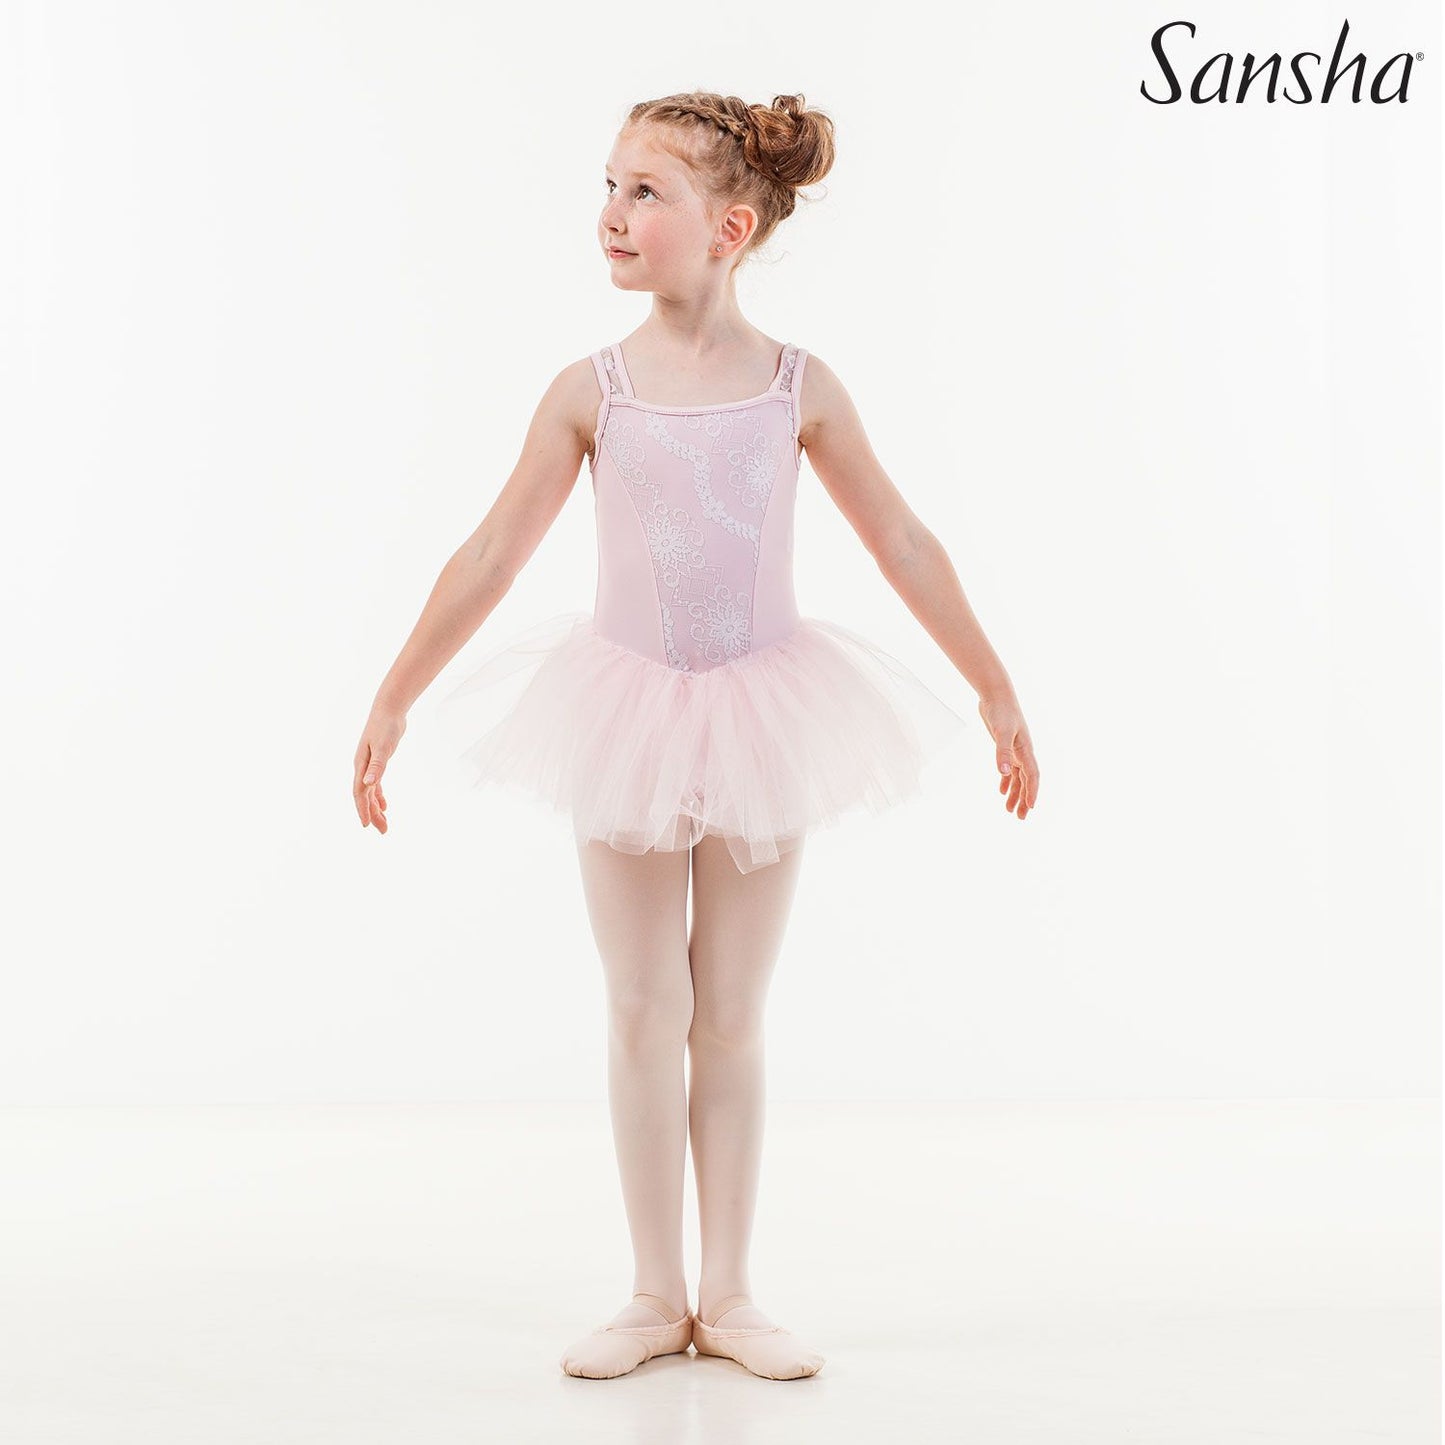 Sansha, lasten vaaleanpunainen balettiasu, Flaurine